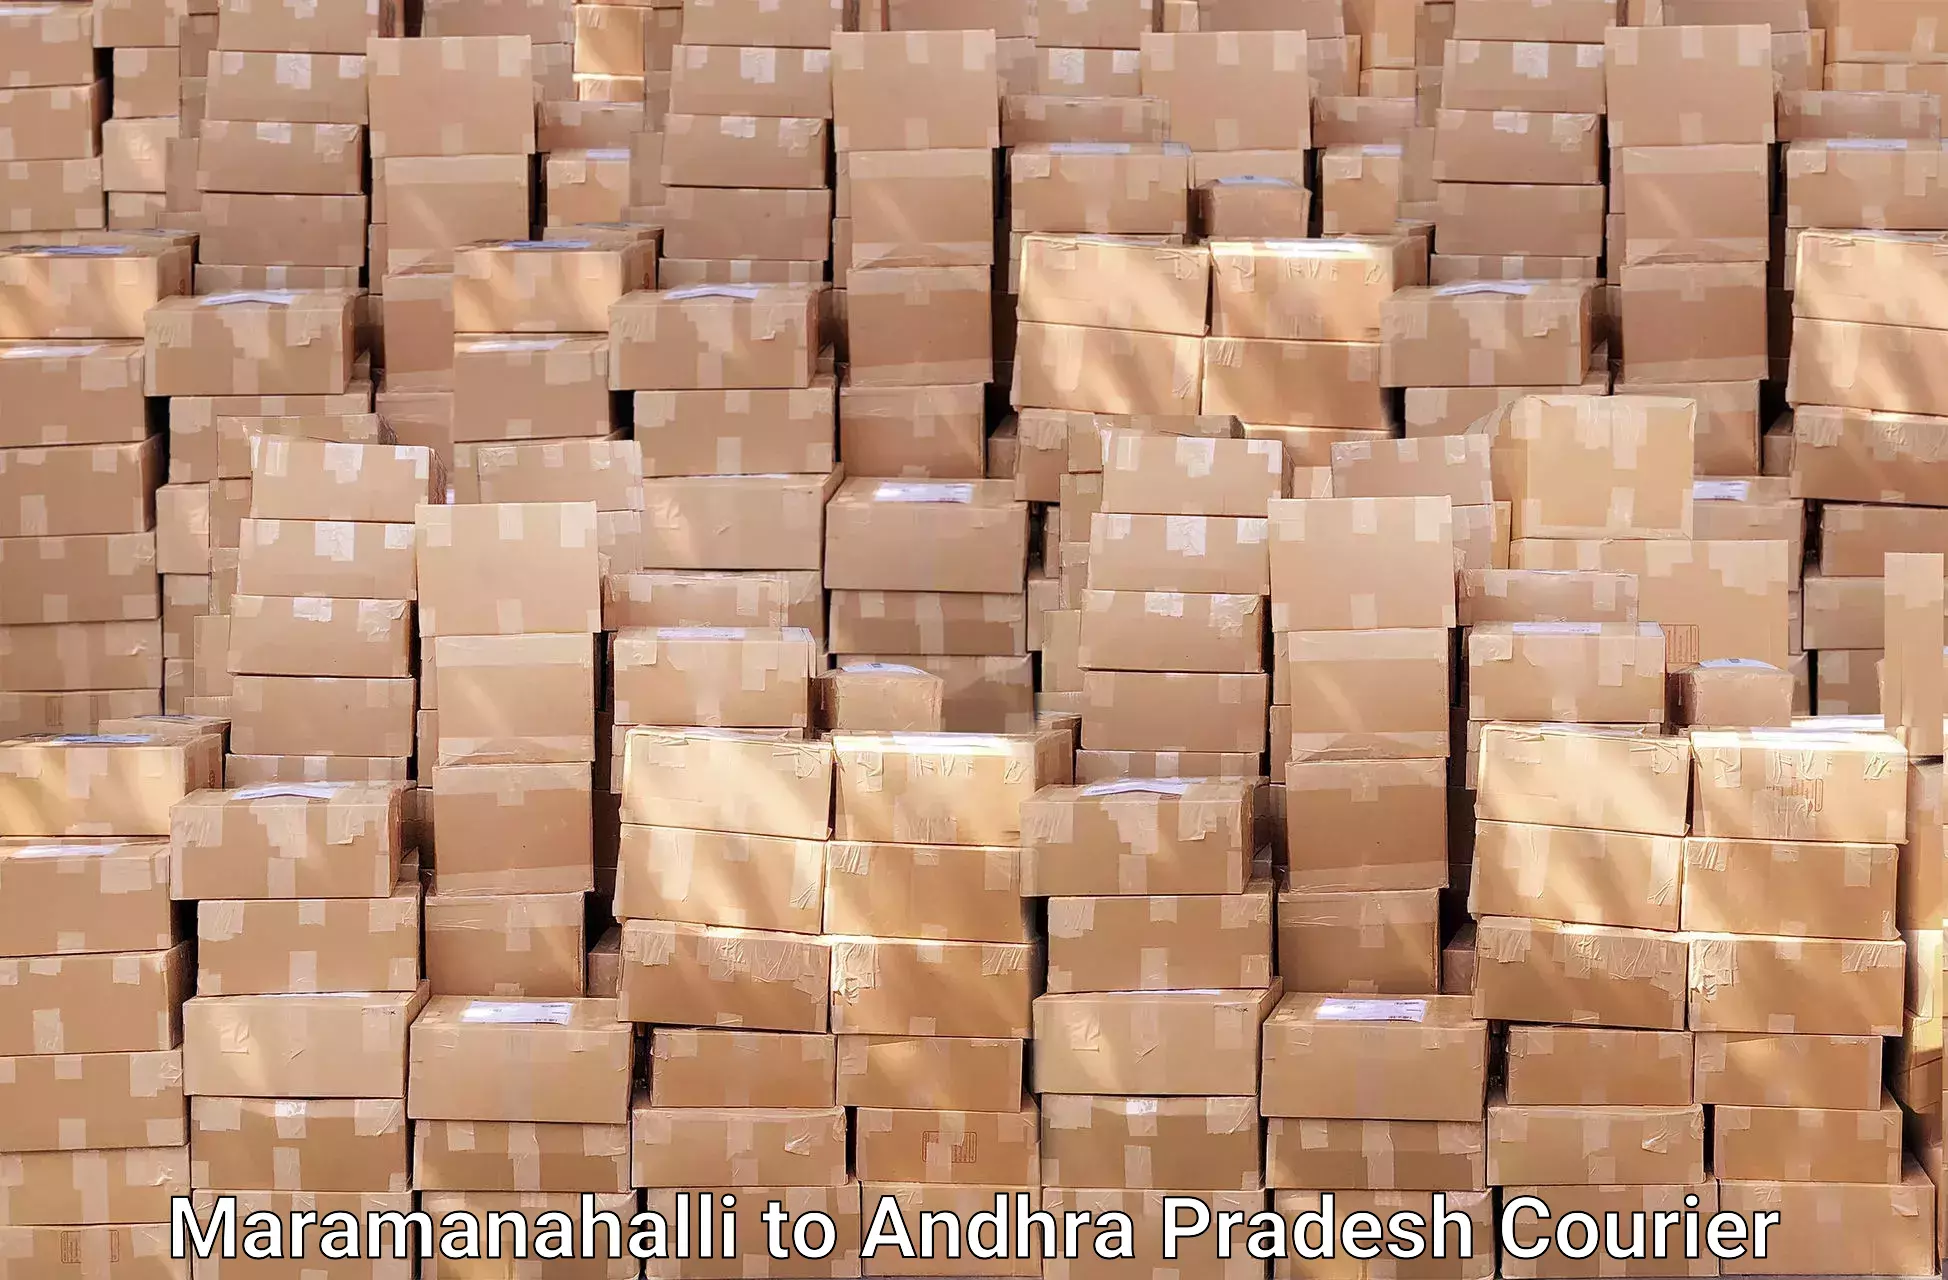 Skilled furniture movers Maramanahalli to Bantumilli